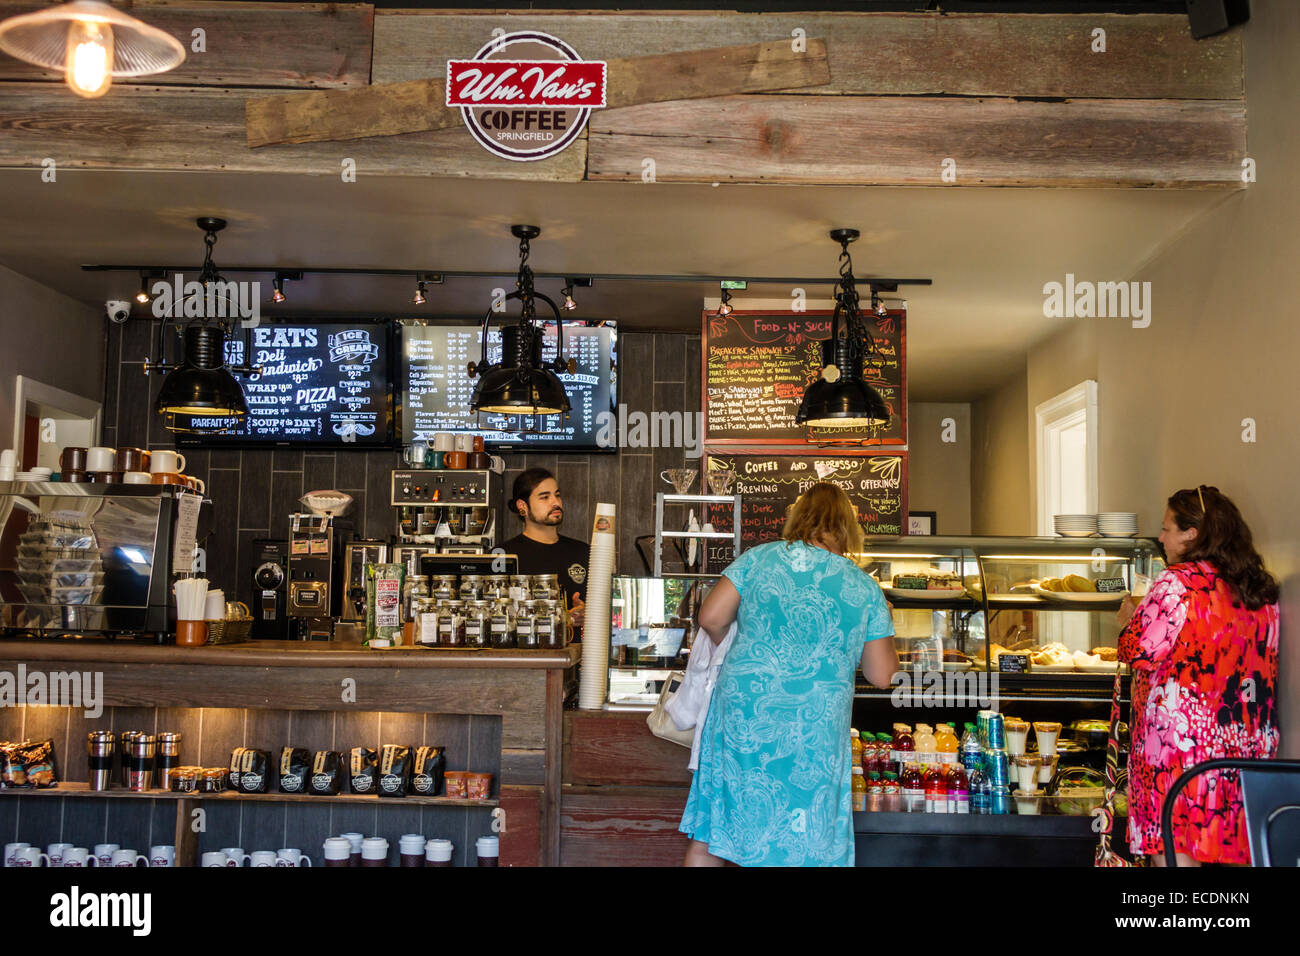 Springfield Illinois, Van's Coffee House, innen, Cafe, Schalter, Kunden, Besucher reisen Reise touristischer Tourismus Wahrzeichen Cultu Stockfoto